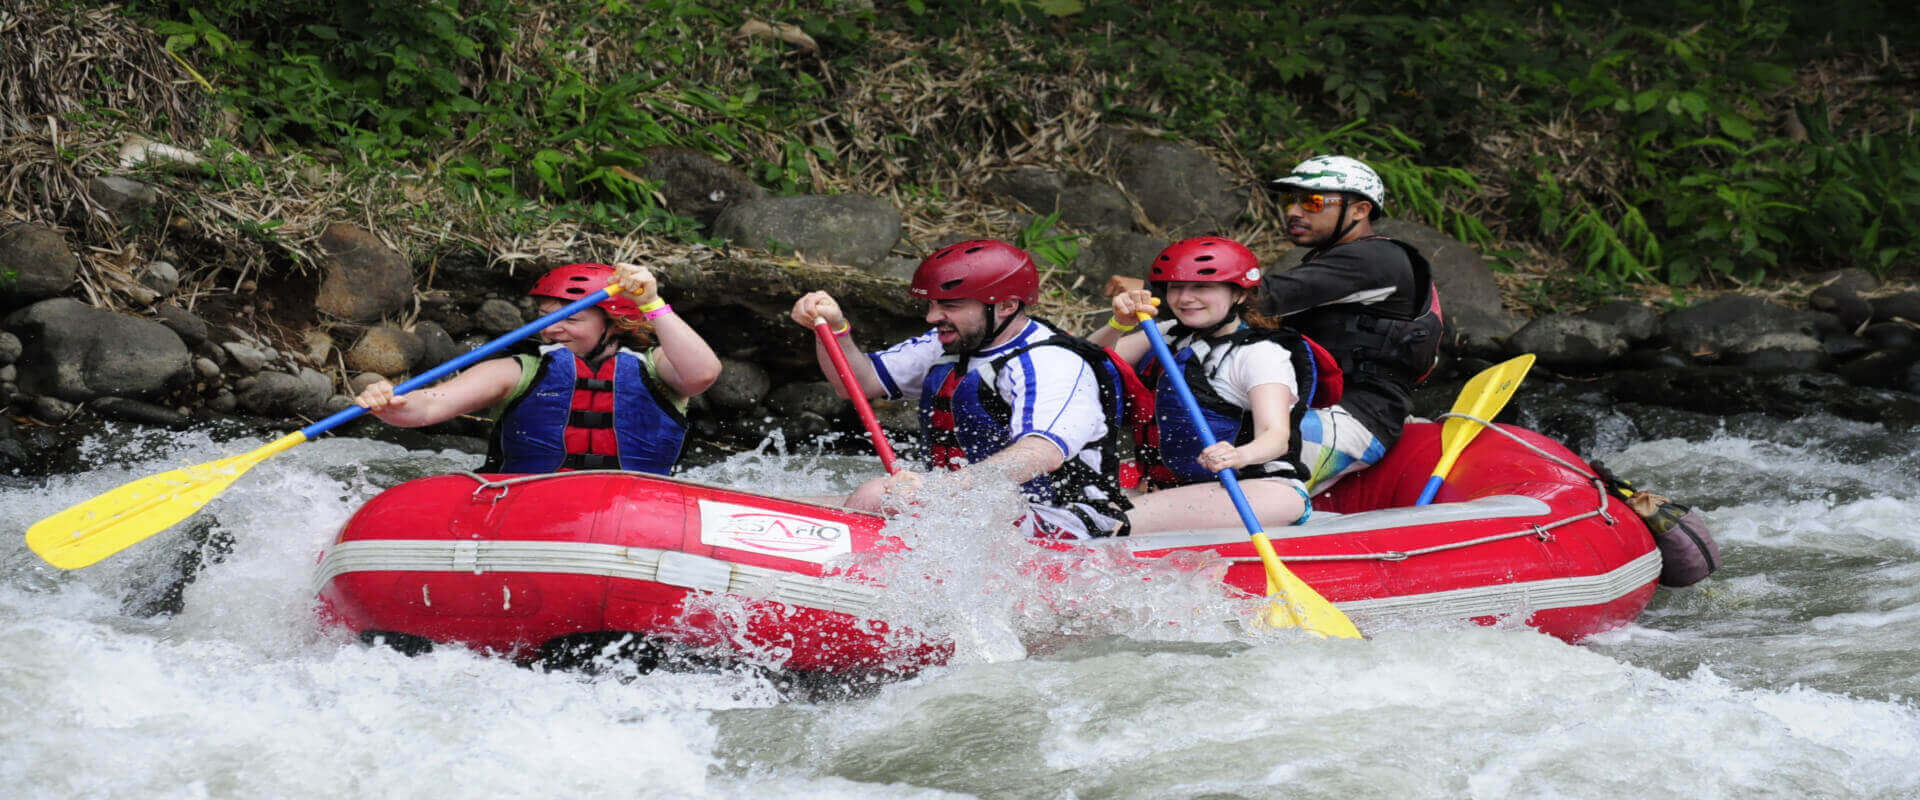 Rafting Clase III / IV en el río Tenorio | Costa Rica Jade Tours